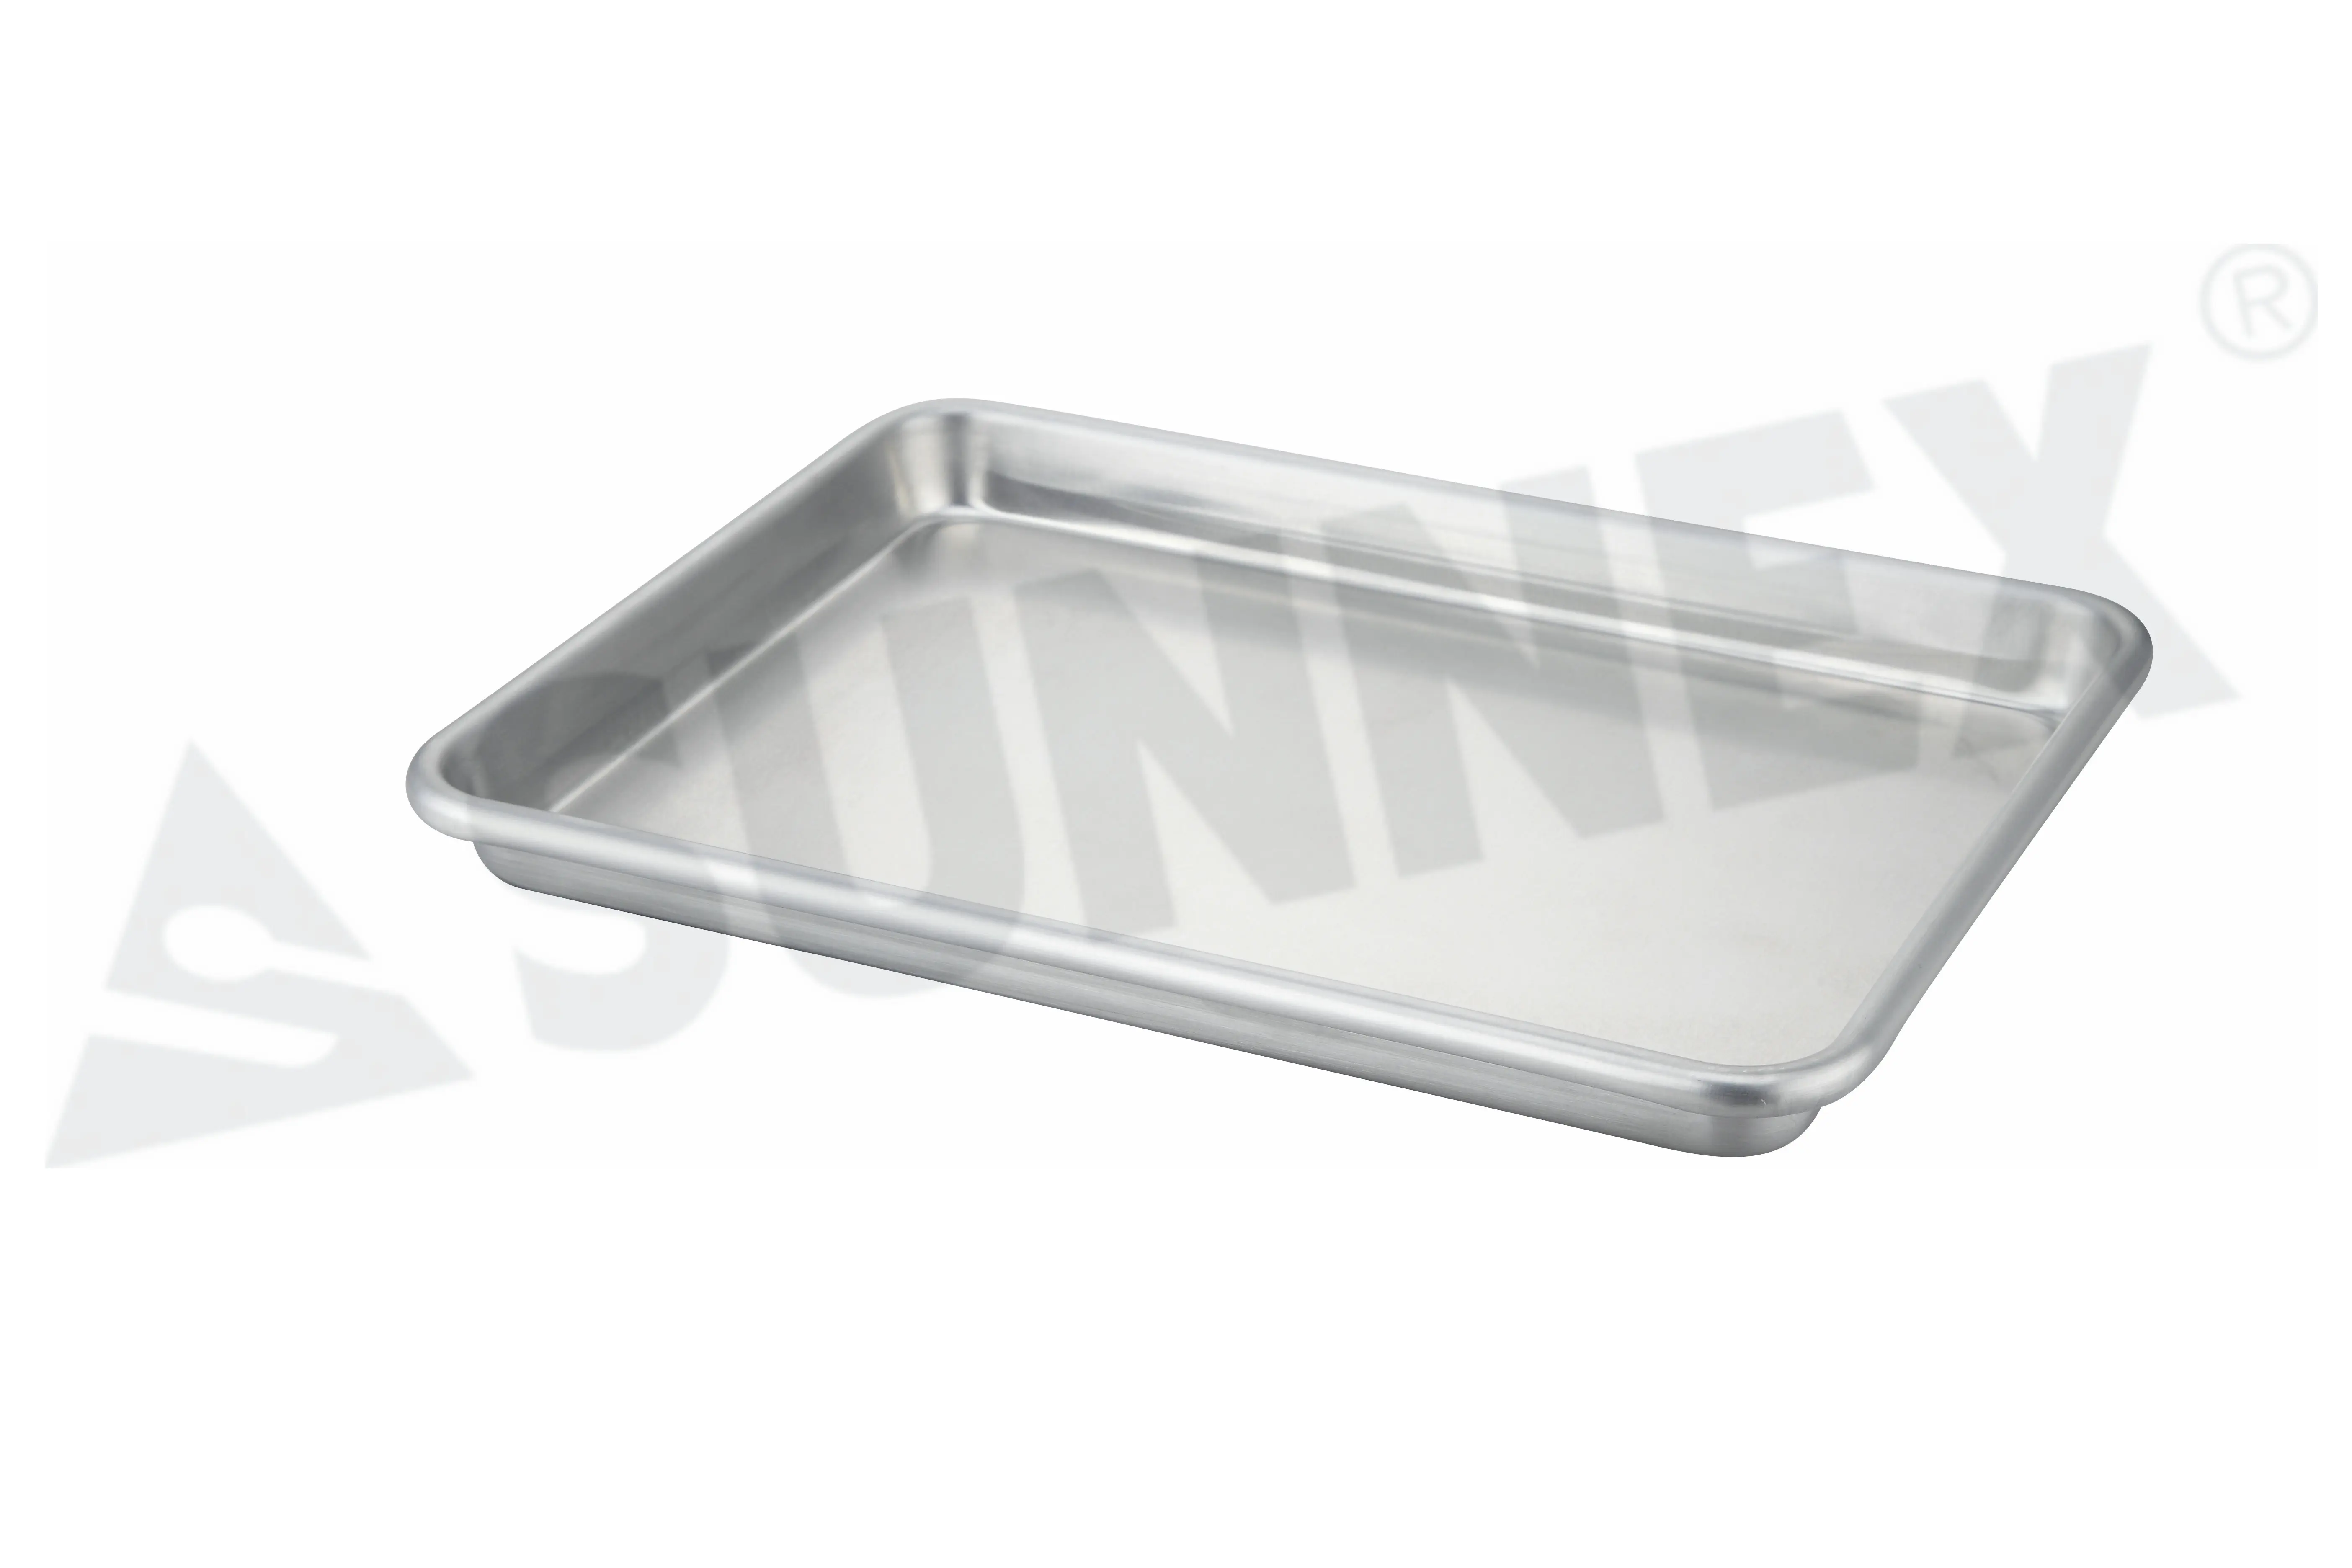 Aluminium baking tray 2/3 GN Aluminium Baking tray